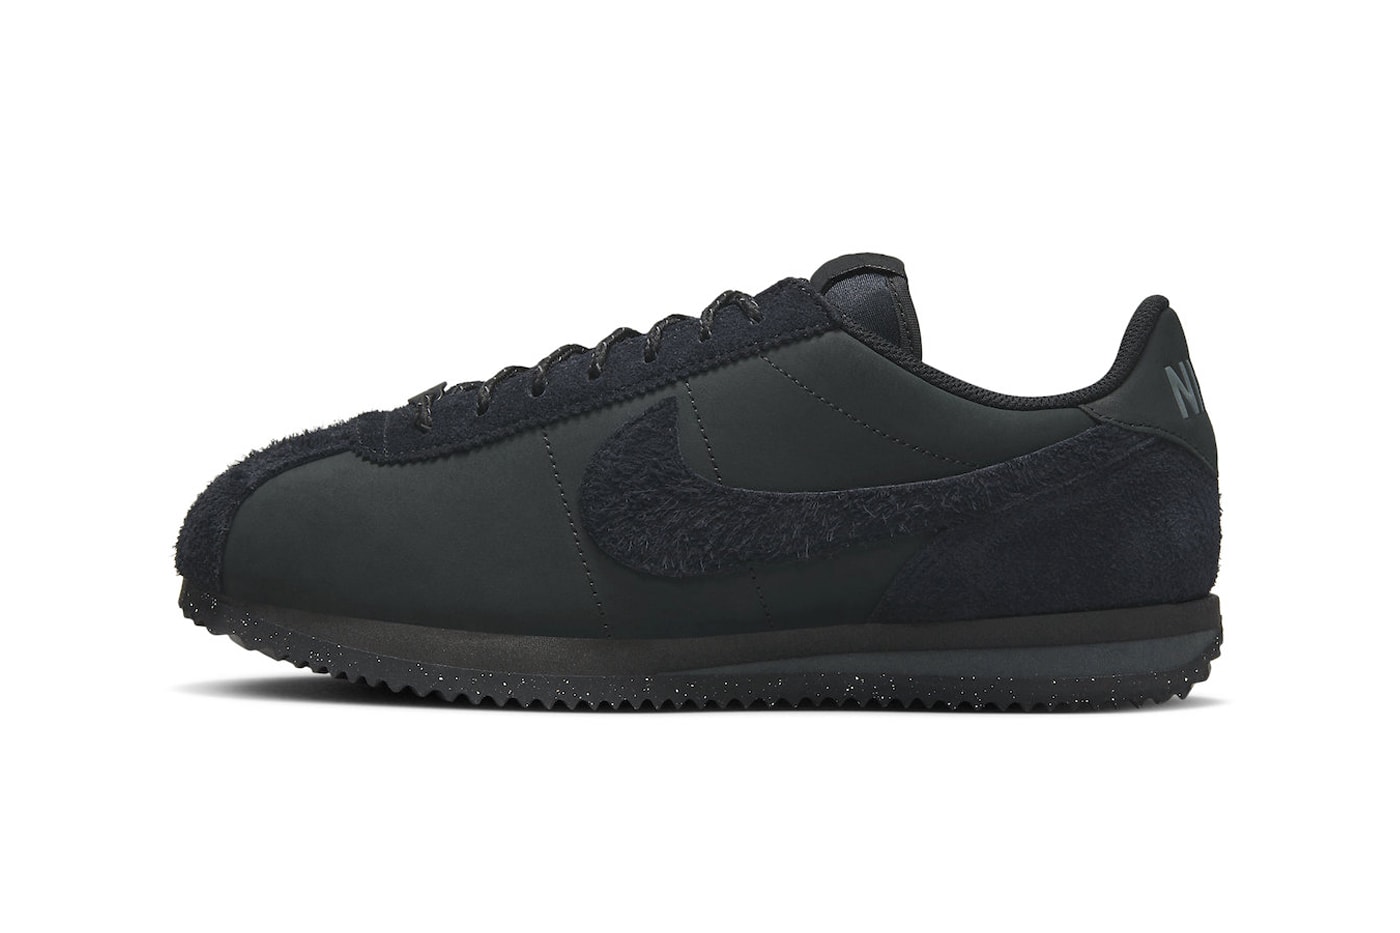 Kalmerend uitvinden Tienerjaren Nike Cortez PRM "Triple Black" FJ5465-010 Release | Hypebeast